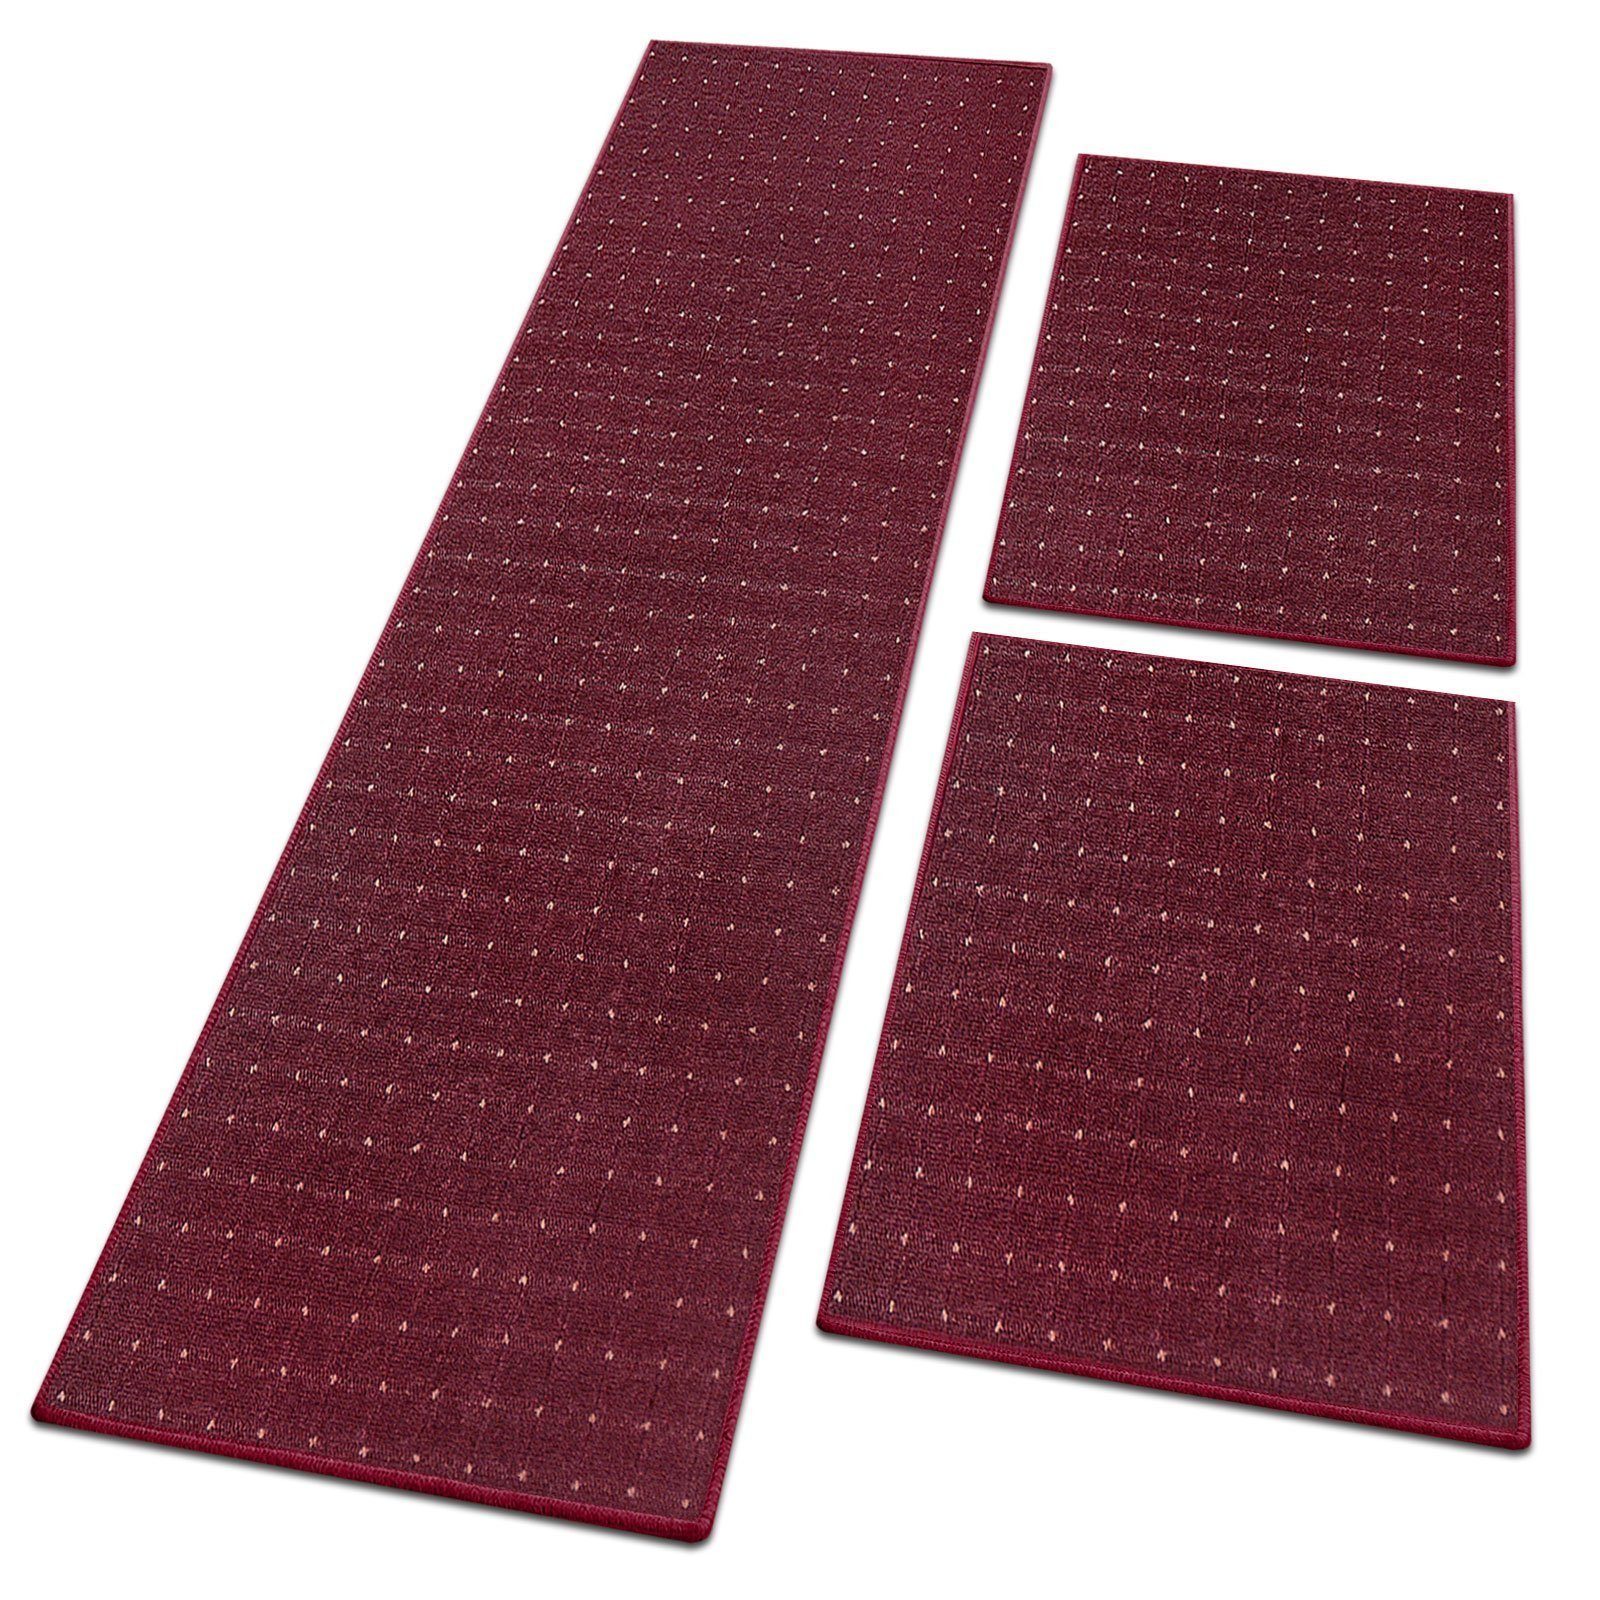 Bettumrandung Rapido, 4 Farben & 3 Größen, Bettvorleger Floordirekt, Höhe 5 mm, (3-tlg)